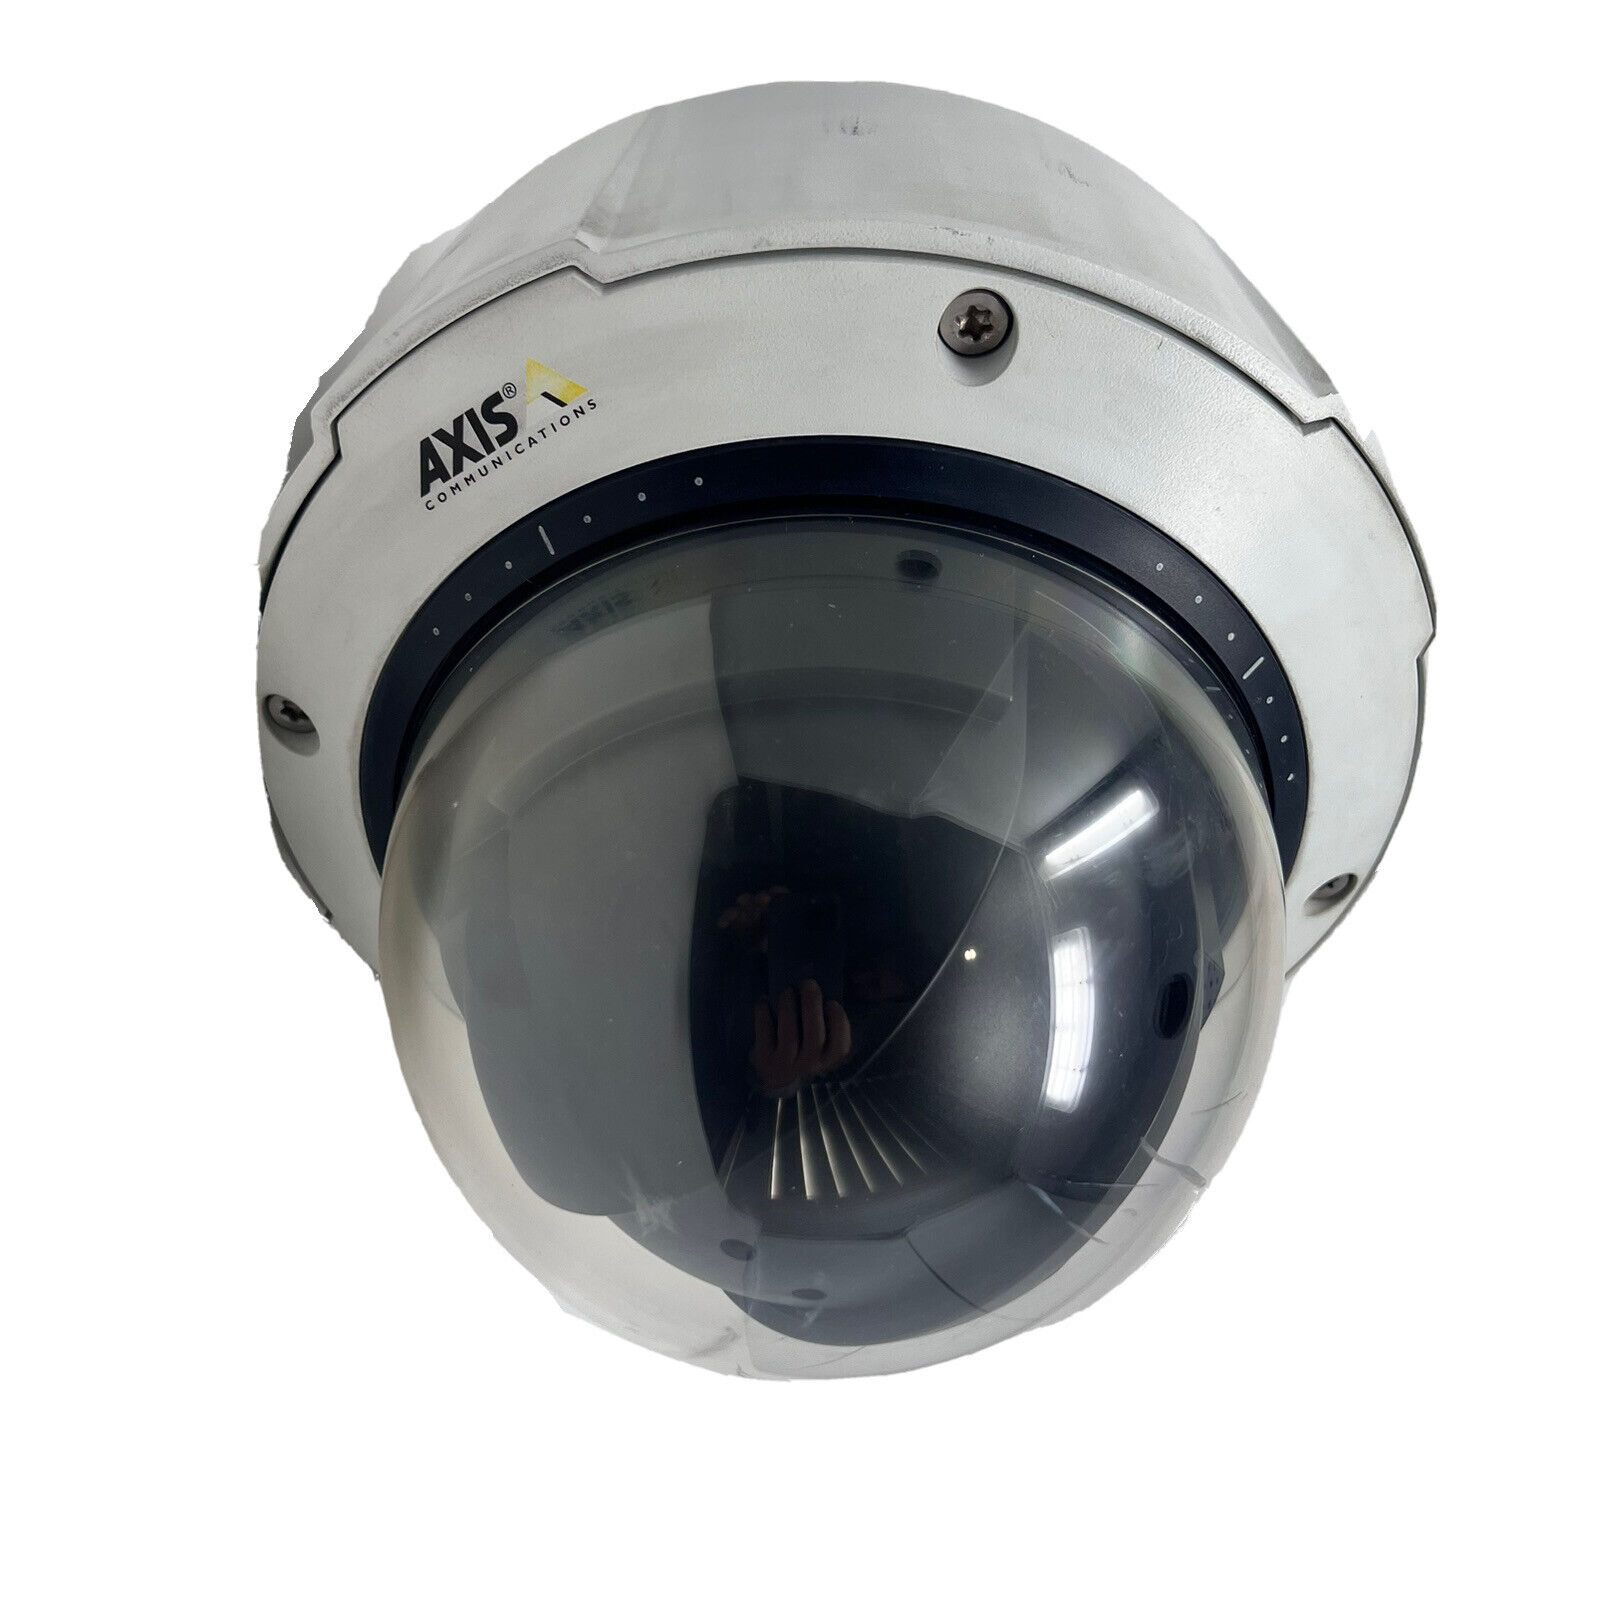 Axis Communications Q6032-e Dome Network Camera 0318-001-01 Parts/repair Mw00d1